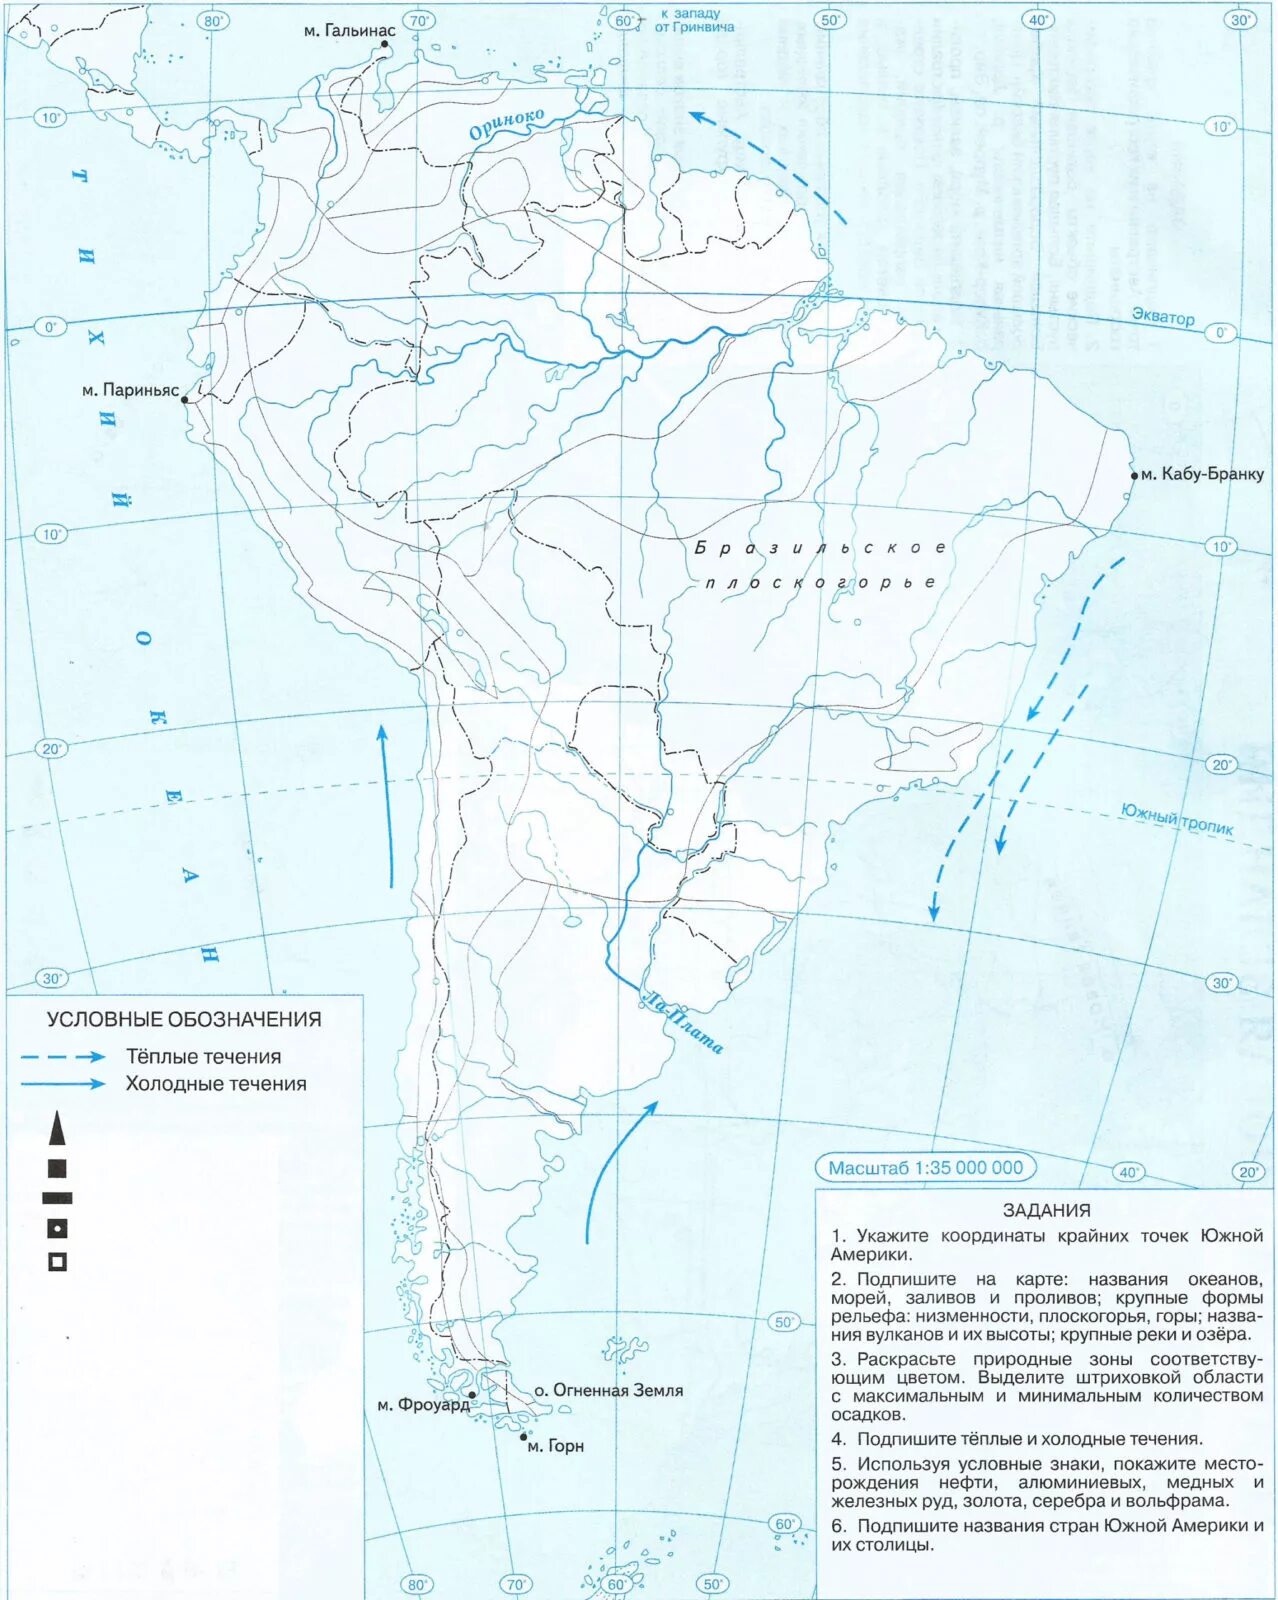 Физическая карта Южной Америки 7 класс контурная карта. Контурная карта по географии 7 класс Южная Америка. Физическая карта Южной Америки 7 класс география контурная карта. Контурная карта по географии 7 класс по Южной Америке. Озера южной америки 7 класс контурная карта